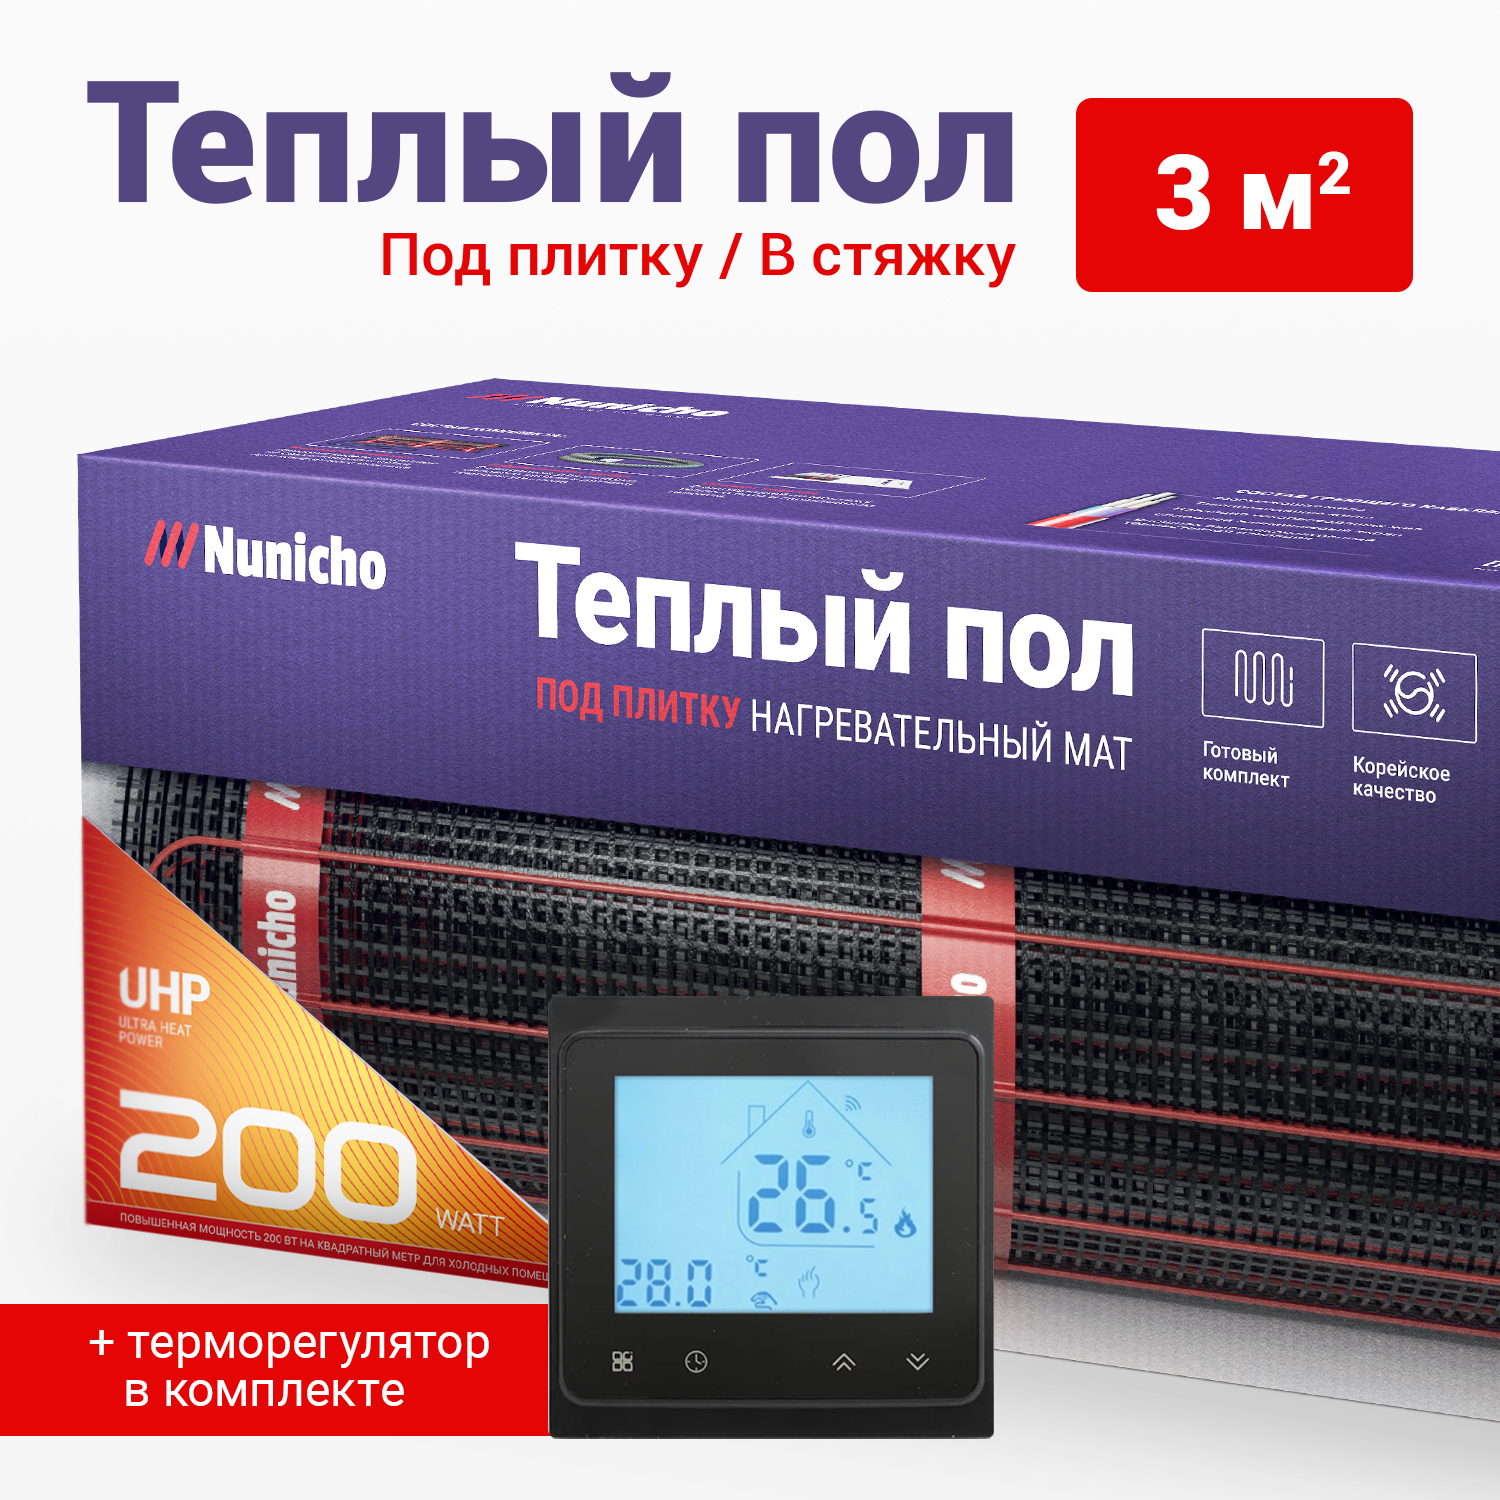 фото Теплый пол под плитку в стяжку nunicho 3 м2, 200 вт/м2 со smart-терморегулятором черным